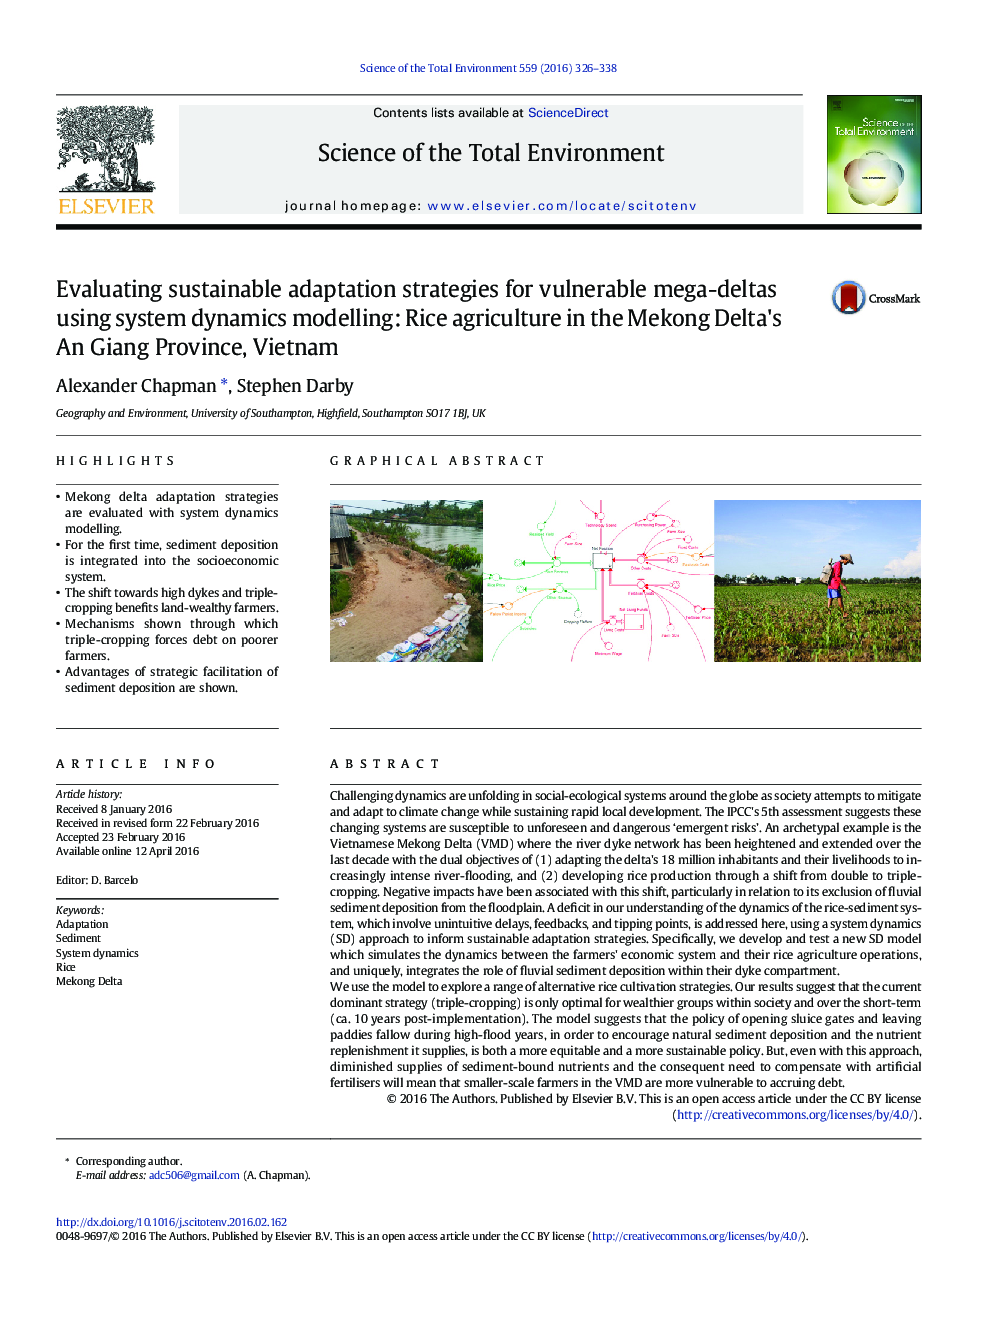 ارزیابی راهکارهای انطباق پایدار برای مگا دلتاهای آسیب پذیر با استفاده از مدل سازی پویایی سیستم: کشاورزی برنج در استان دونگ مکونگ، استان ویتنام 